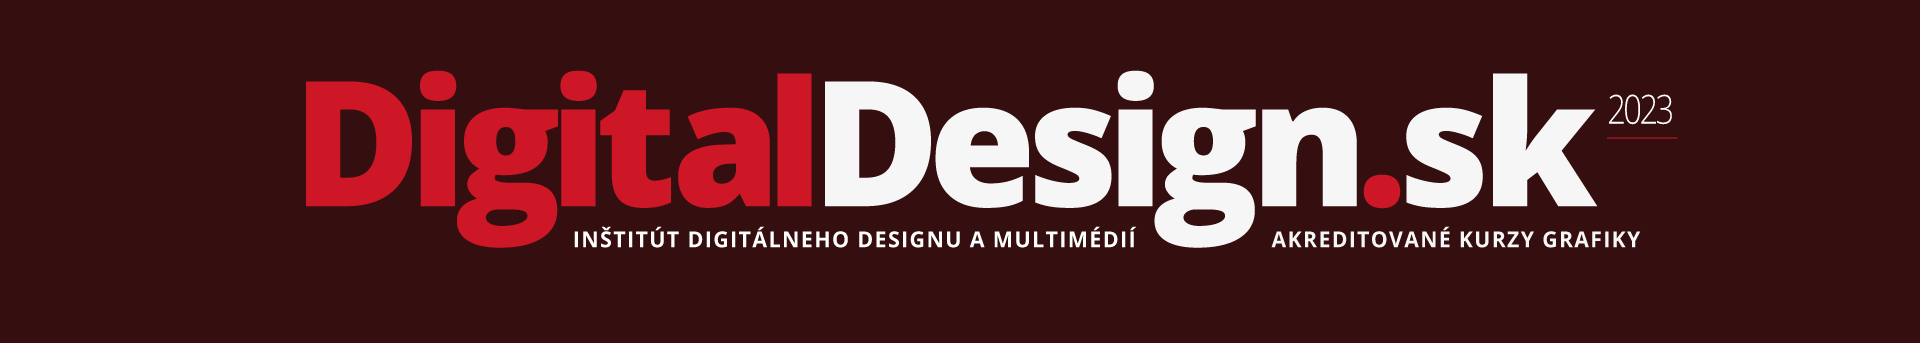 DigitalDesign.sk 2023 = akreditované kurzy grafiky, kurzy Adobe Illustrator, kurzy Photoshop,, kurzy InDesign, kurzy tvorba webstránok, kurzy grafický design, kurzy webdesign, kurzy KOMPAS, Košice, Prešov